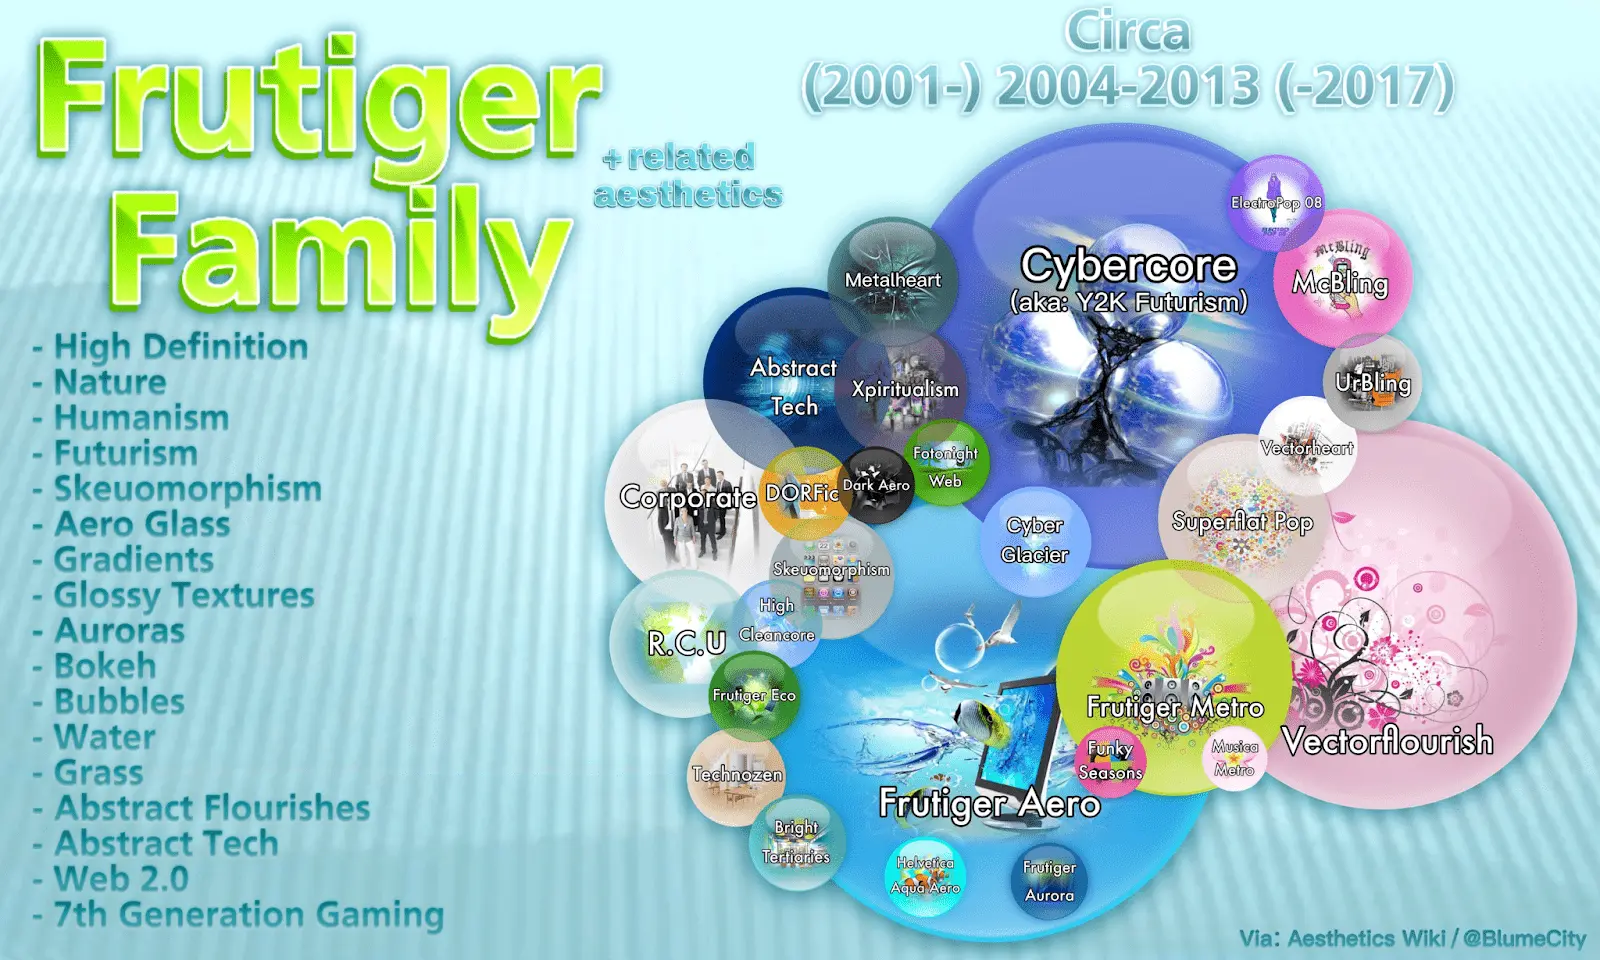 Diagrama que muestra los diversos subgéneros y estéticas relacionadas dentro de la Familia Frutiger